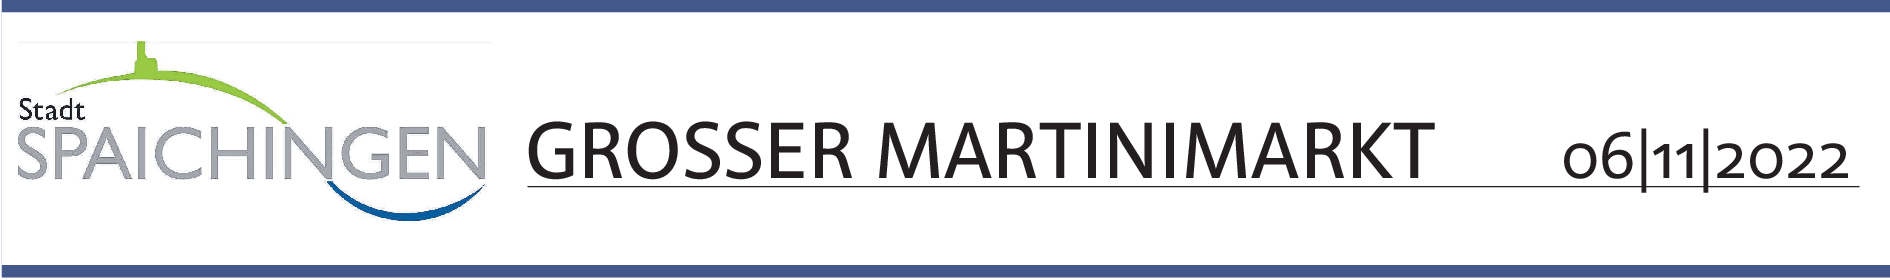 Martinimarkt in Spaichingen: Krämermarkt mit verkaufsoffenem Sonntag